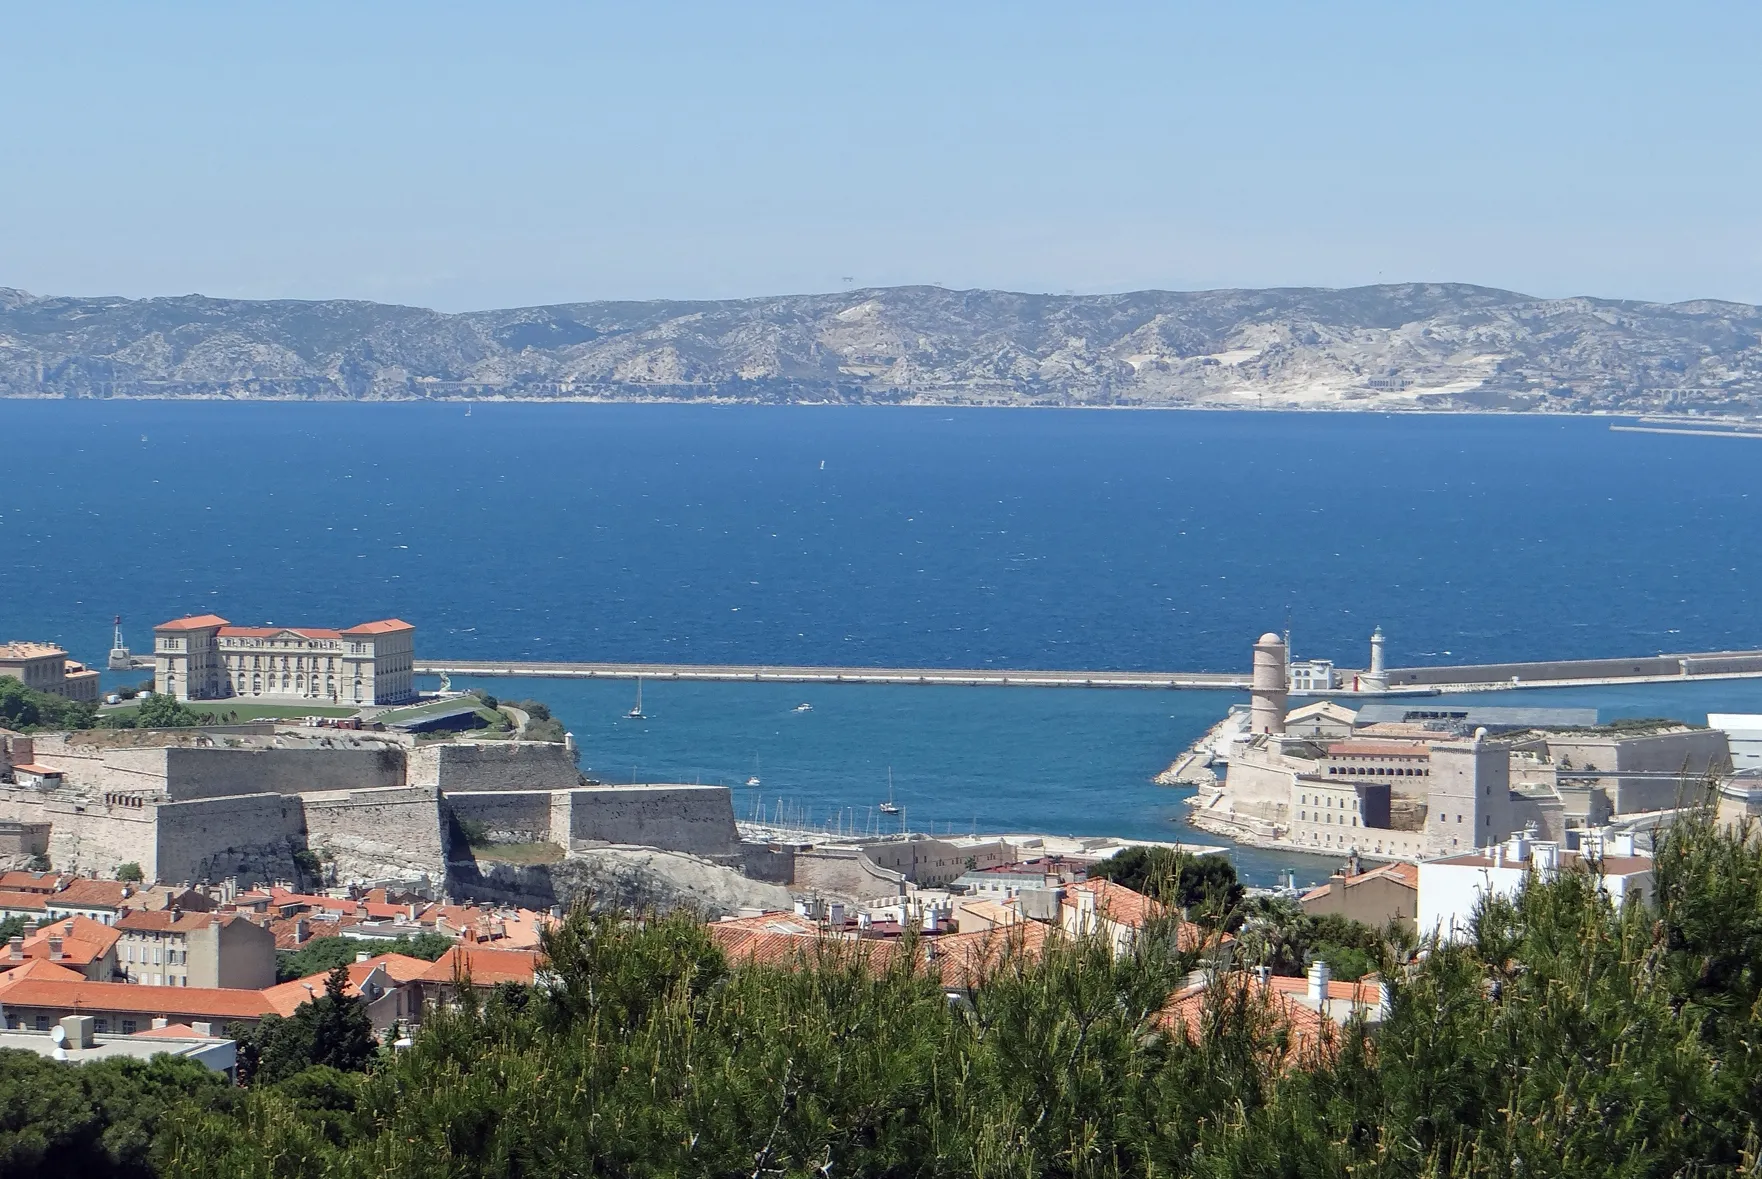 Photo showing: Vue de la rade de Marseille et de la passe du Vieux-Port depuis Notre-Dame-de-la-Garde

www.marseille.fr/sitevdm/jsp/site/Portal.jsp